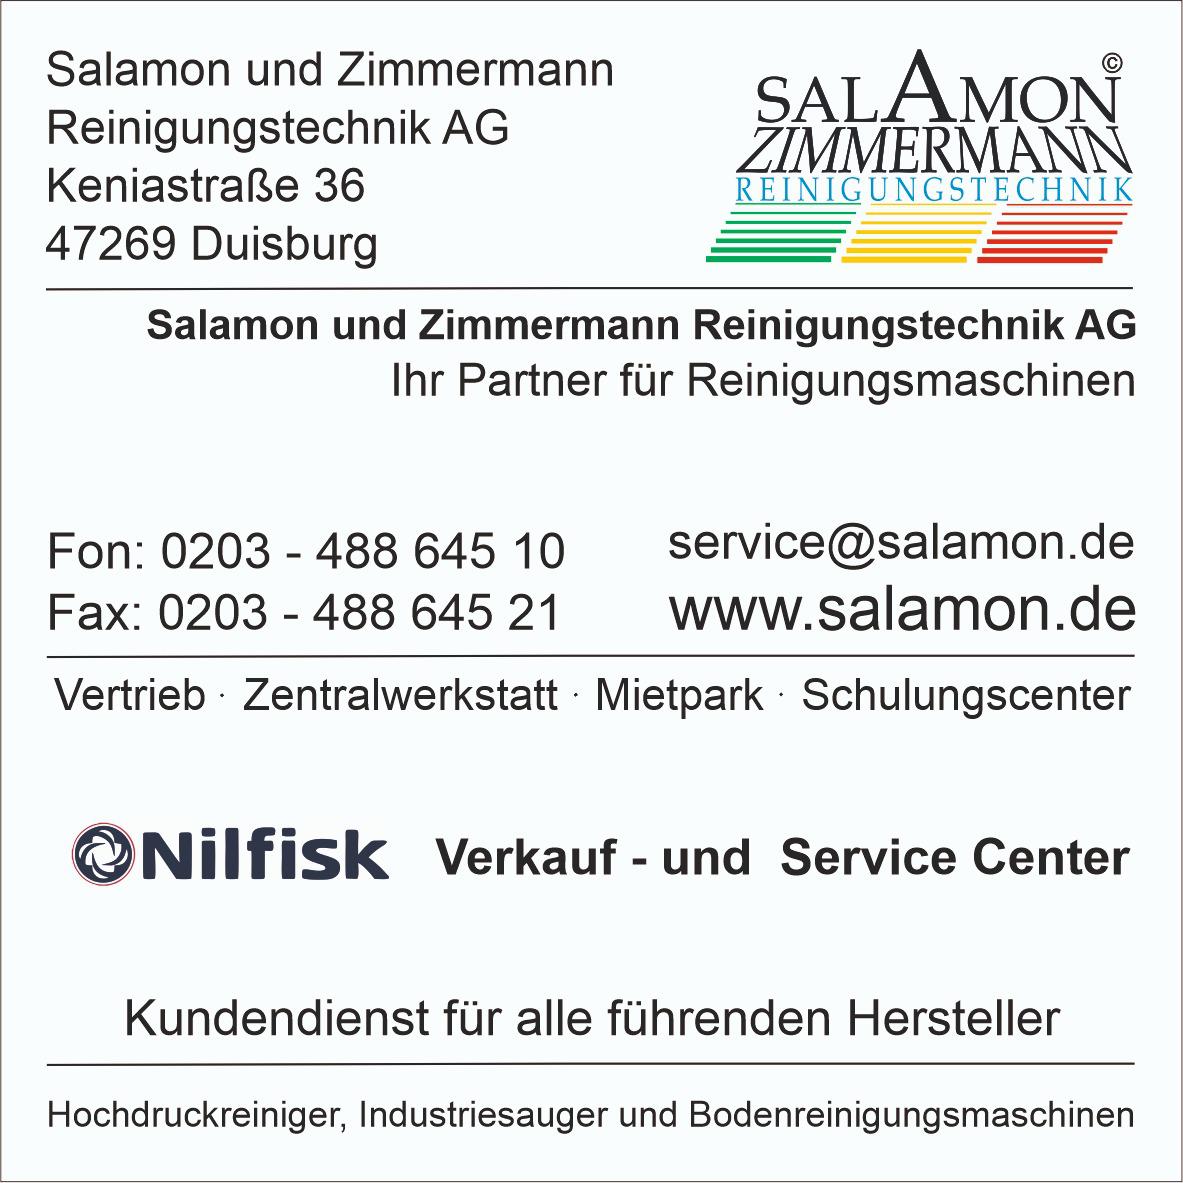 Fotos - Salamon und Zimmermann Reinigungstechnik AG - 2